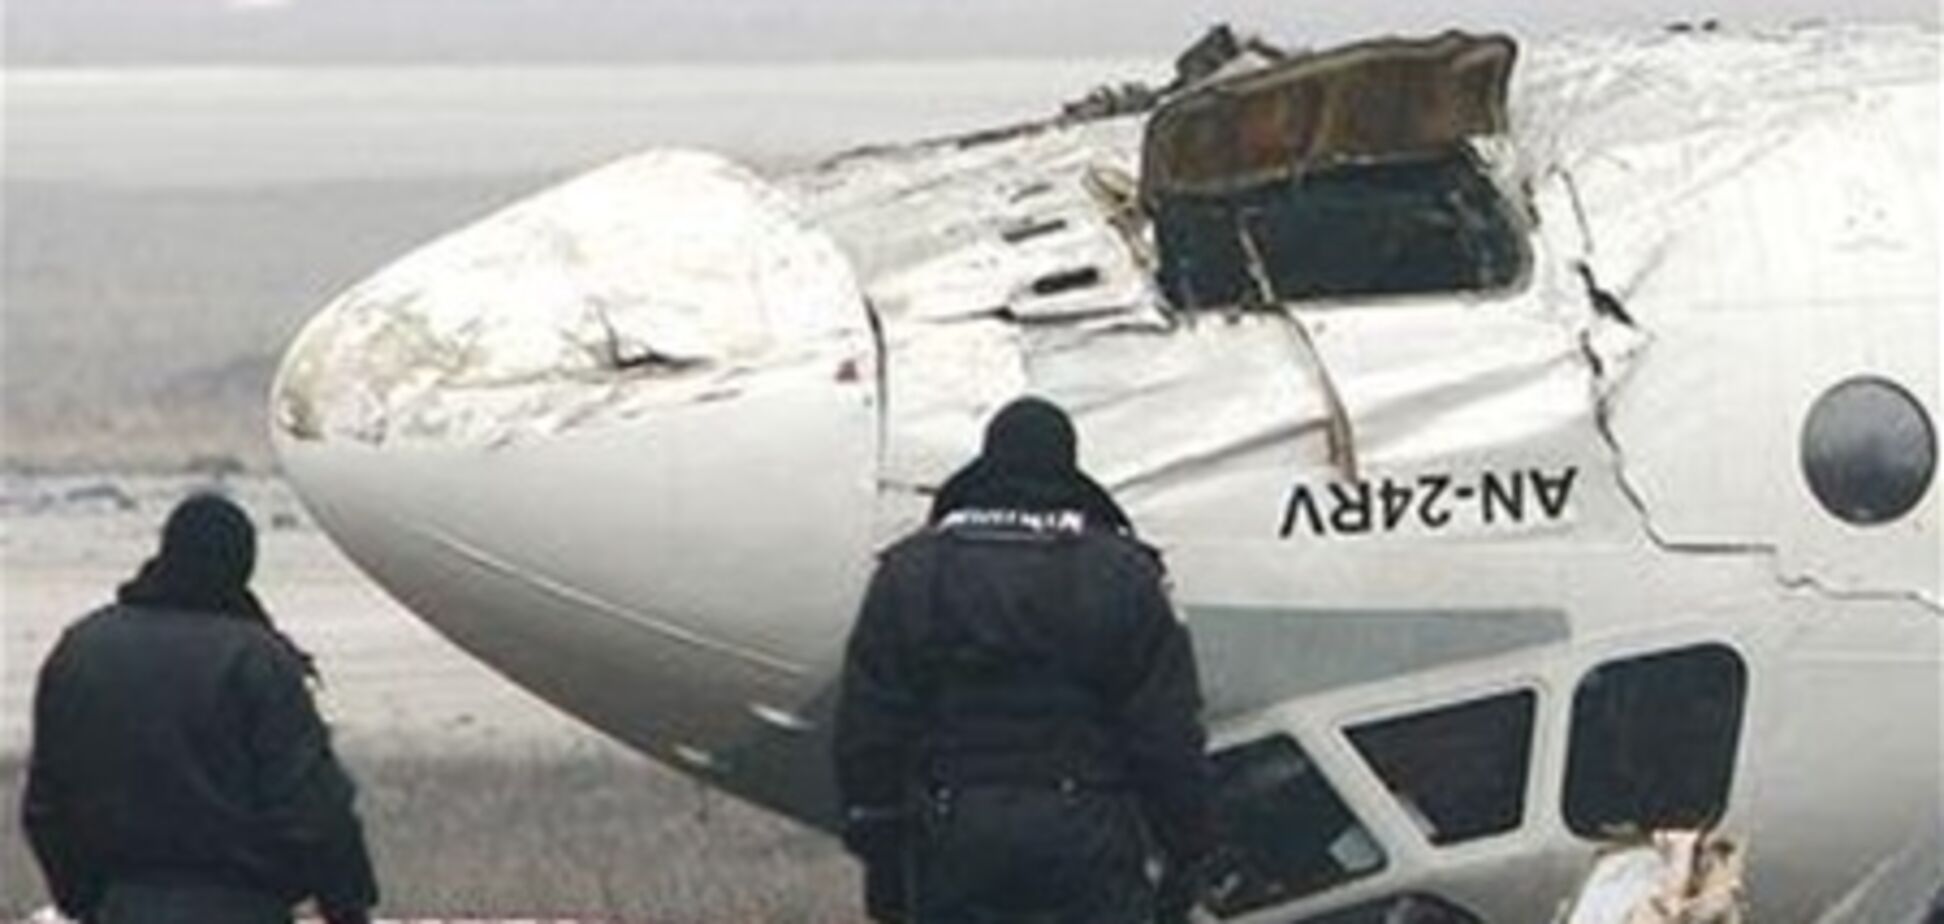 На що впав в Донецьку АН-24 було 8 'зайців' - мер Одеси